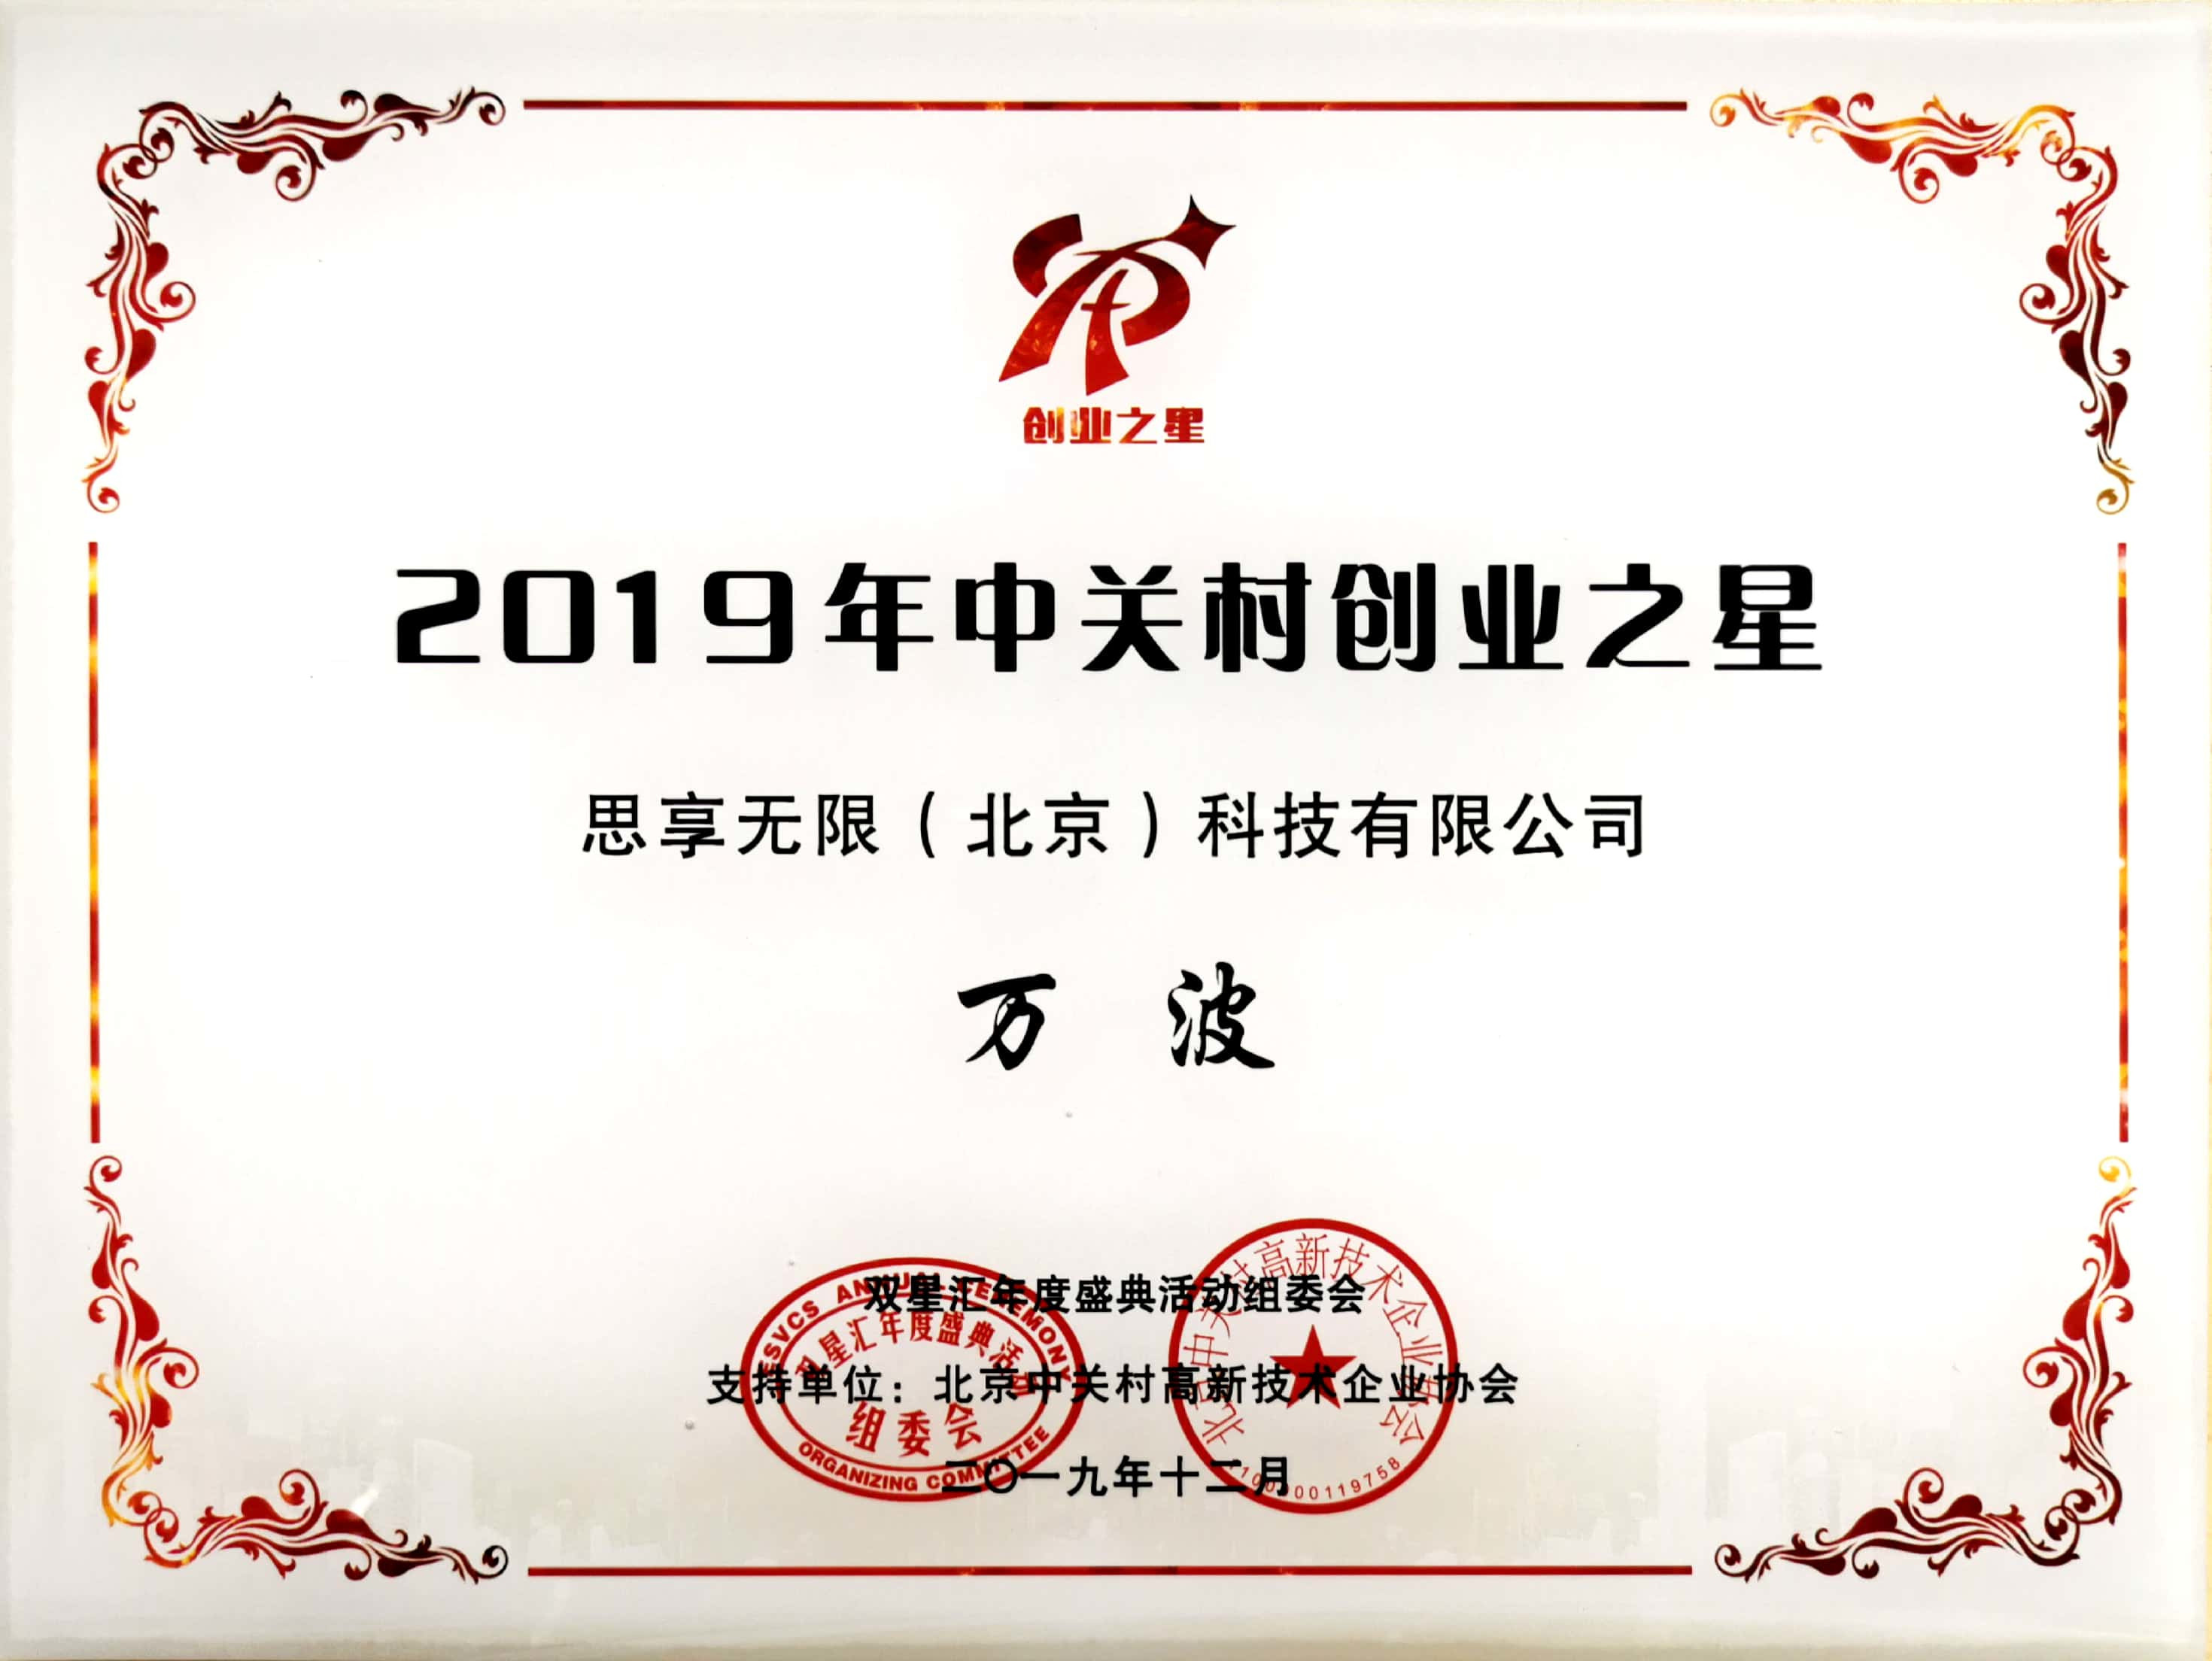                             COO Bo Wan:Zhongguancun Entrepreneurship Star 2019
                        